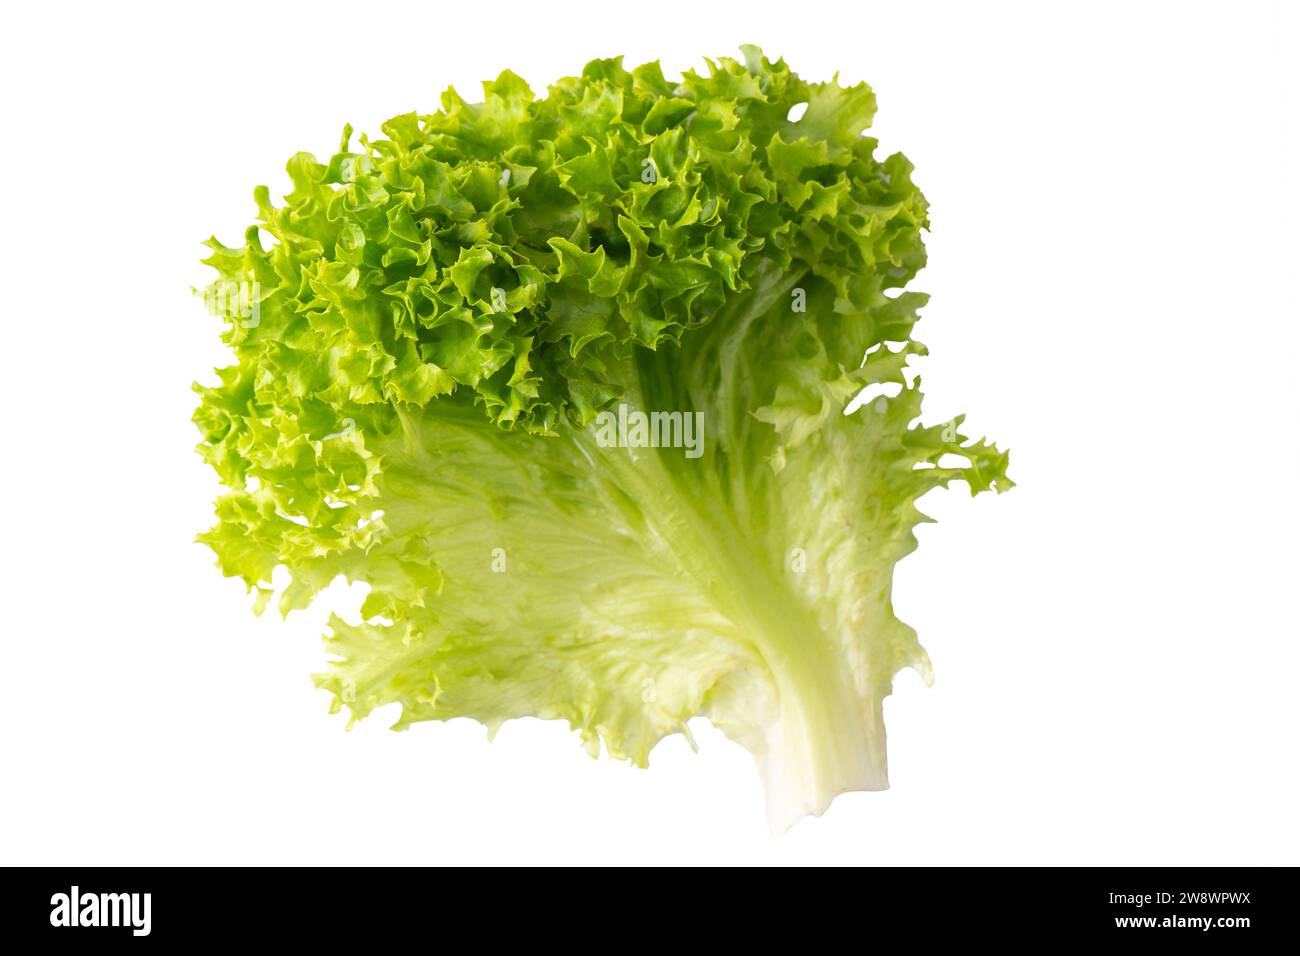 Salade biologique de laitue, légume hydroponique vert frais isolé sur fond blanc. Feuille de salade en gros plan. Nourriture végétarienne, mode de vie sain Banque D'Images